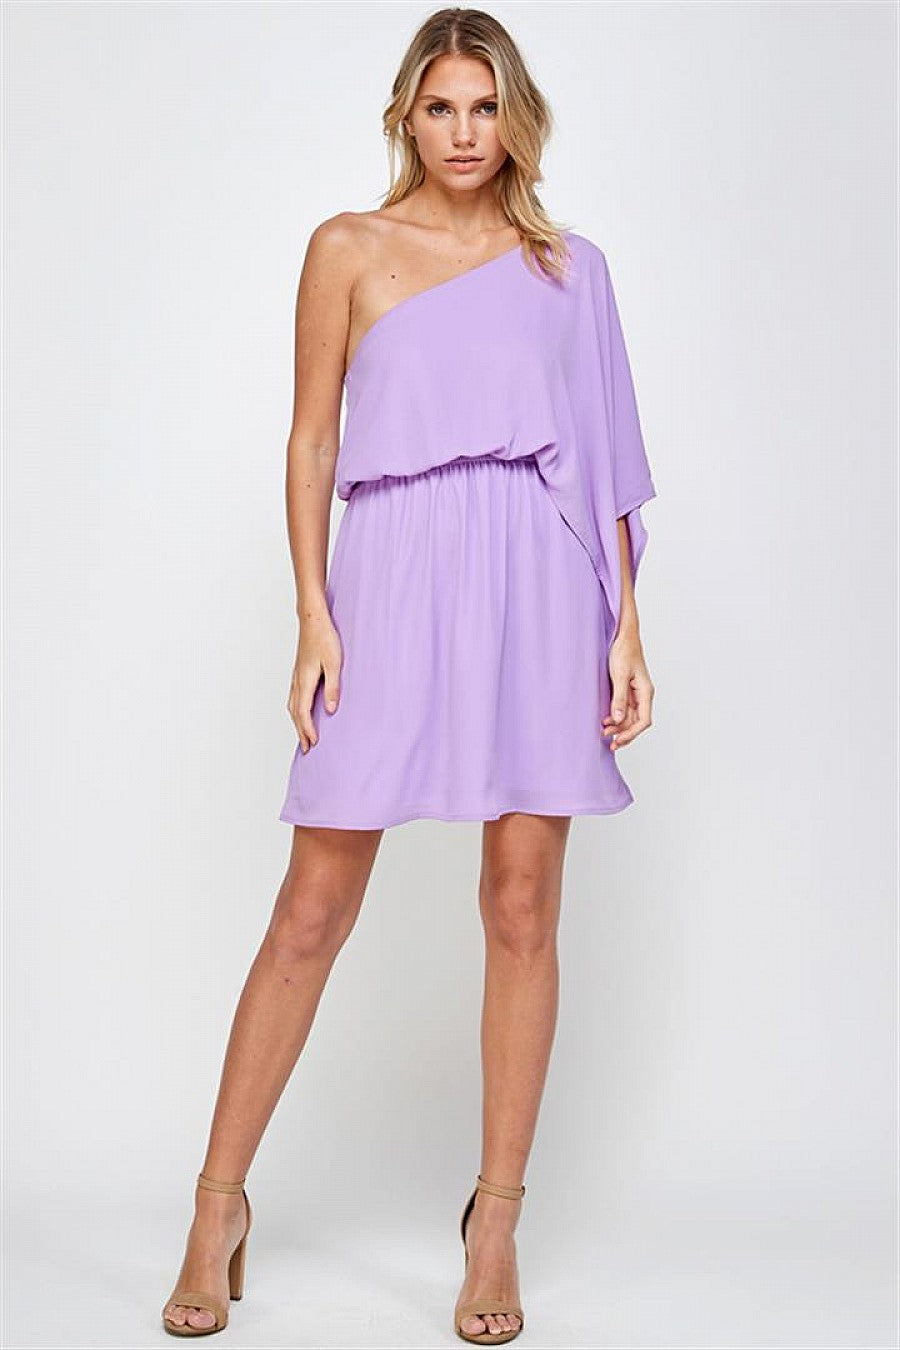 Cocktail Dresses Short One Shoulder Dress Lavender